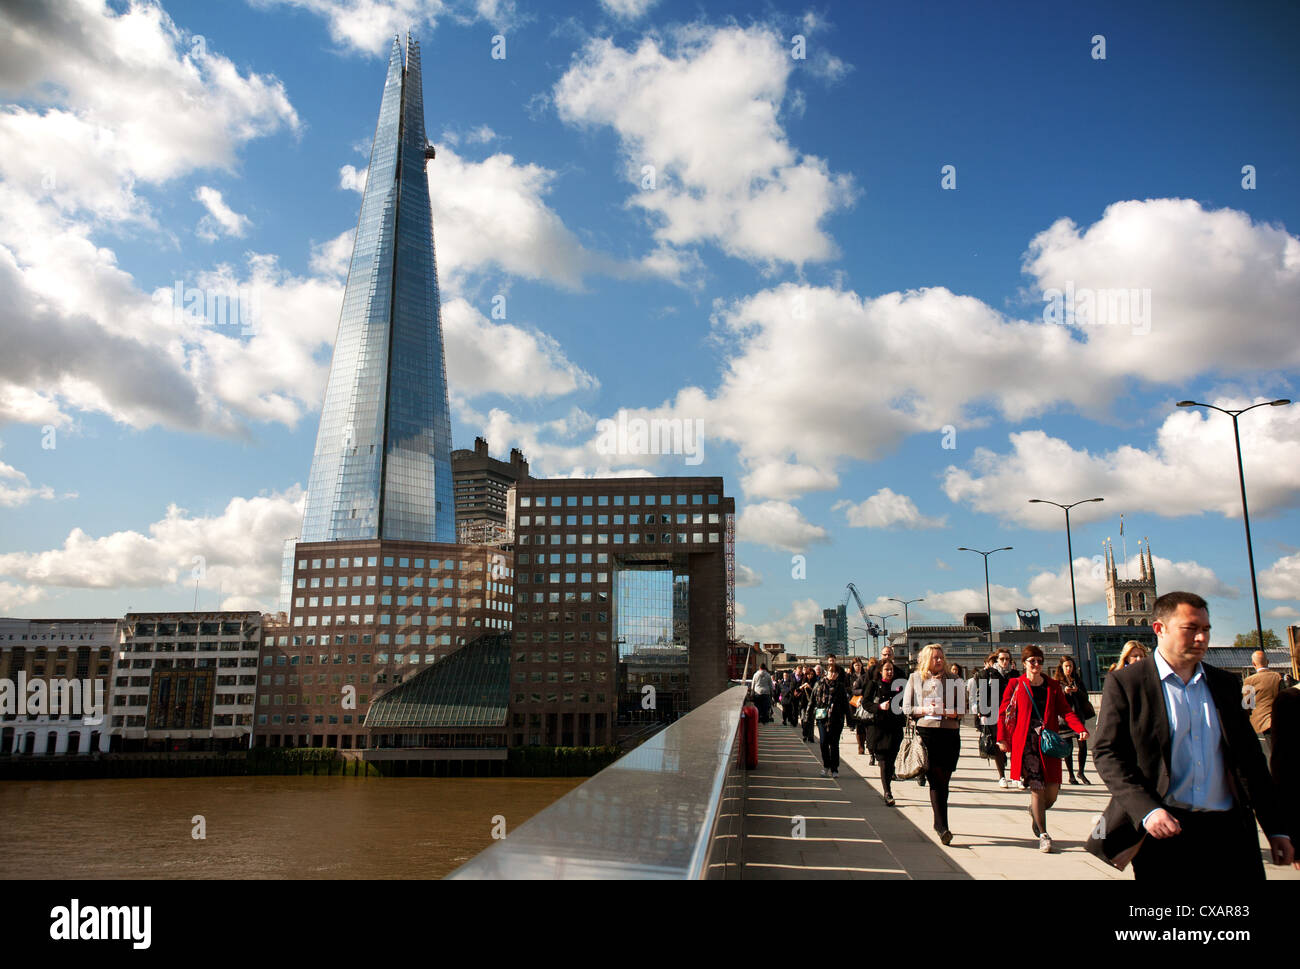 Vue sur le pont de Londres montrant le fragment en arrière-plan, Londres, Angleterre, Royaume-Uni, Europe Banque D'Images